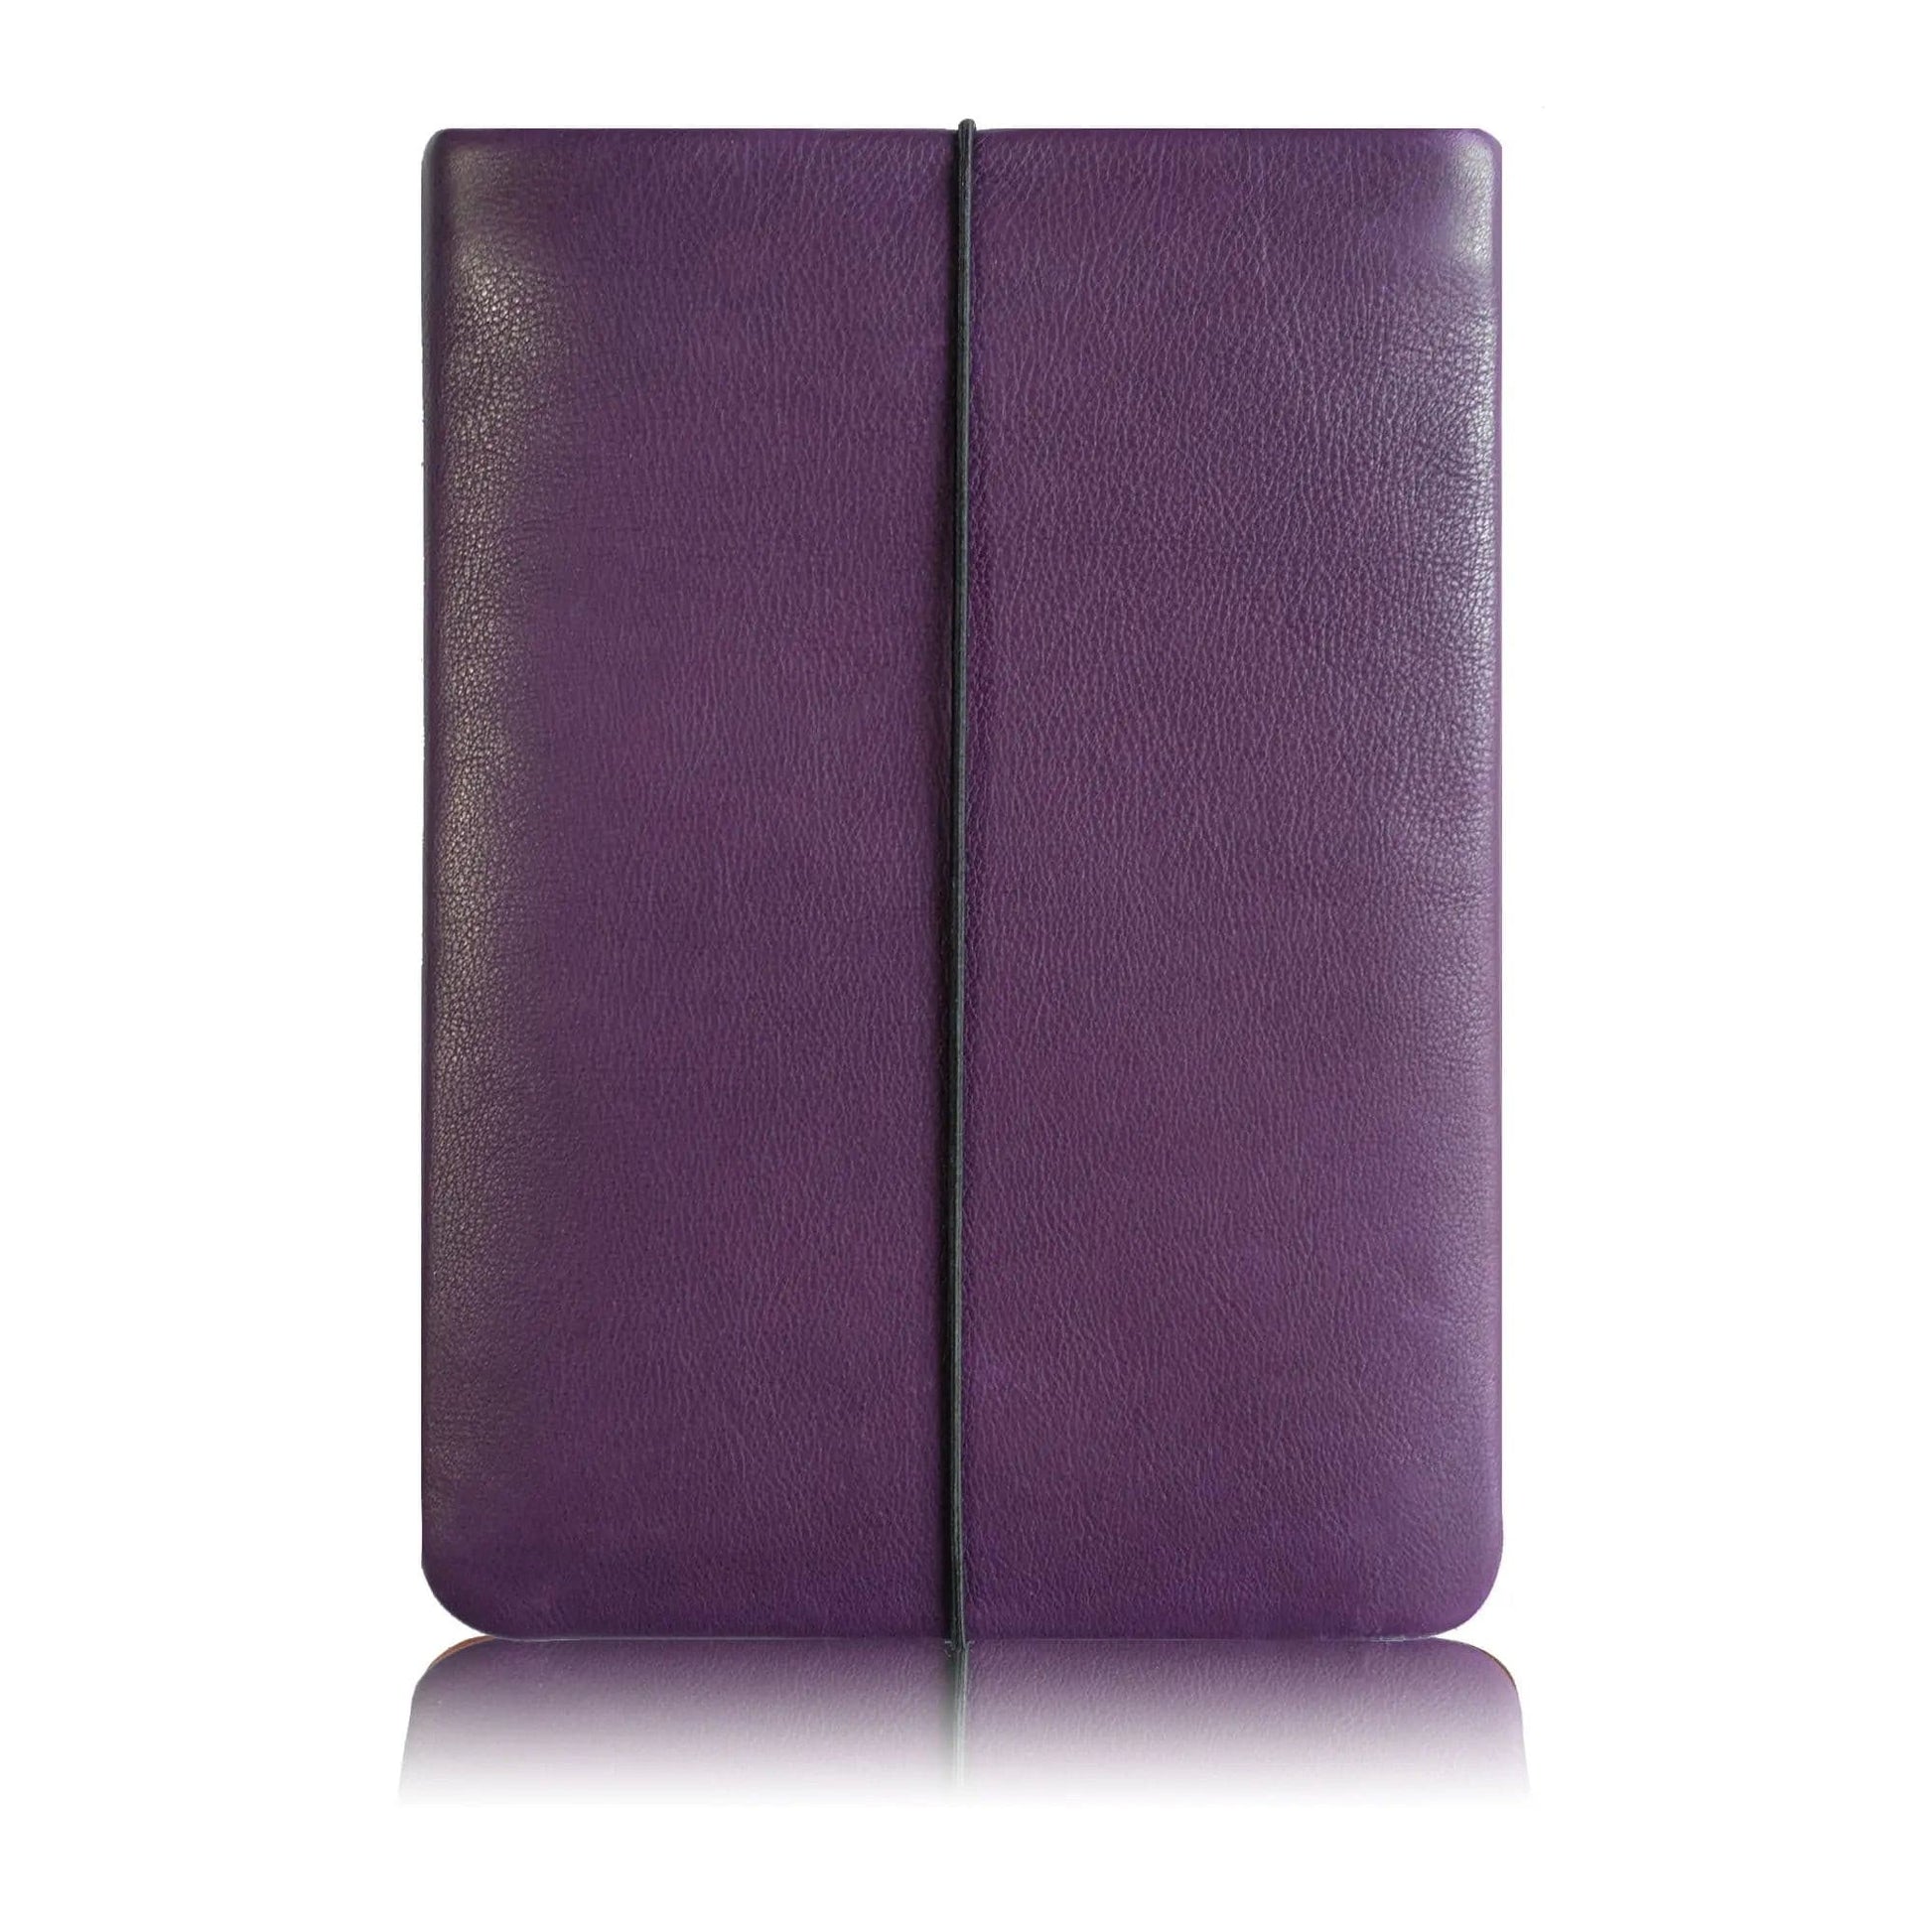 Lederhülle in lila für Macbooks von Vandebag